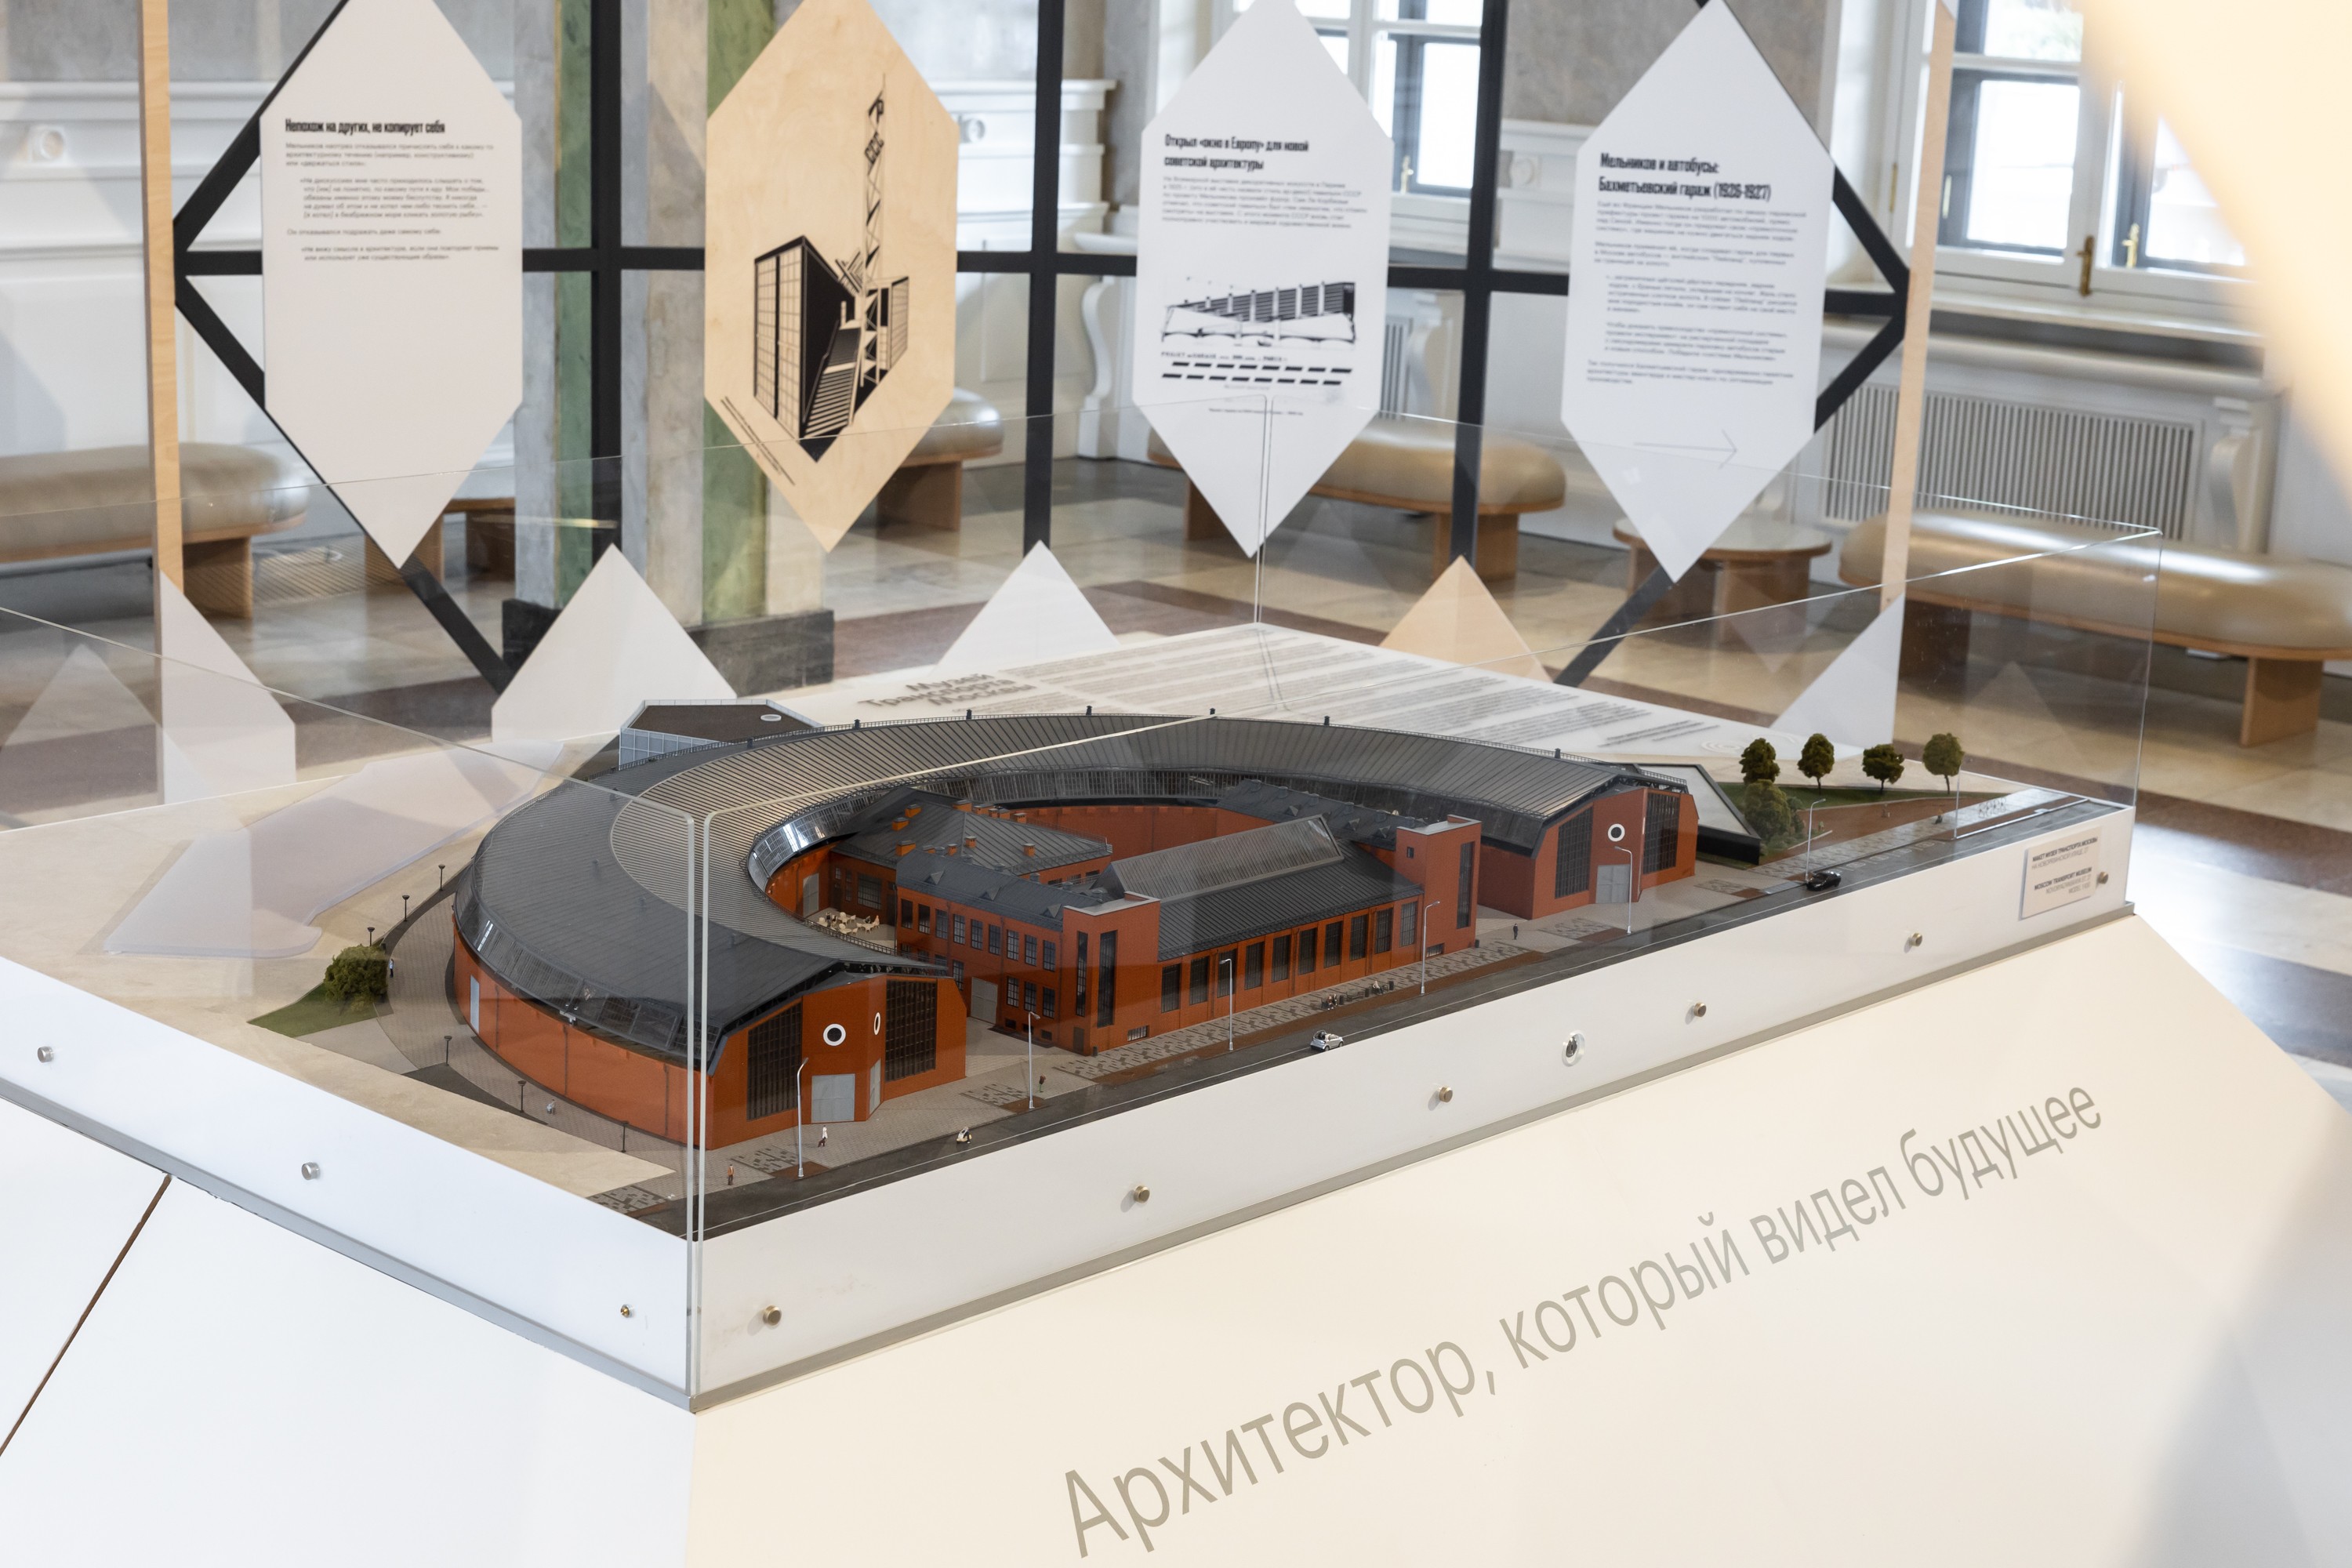 Инсталляция о Константине Мельникове: «Архитектор, который видел будущее». Северный речной вокзал